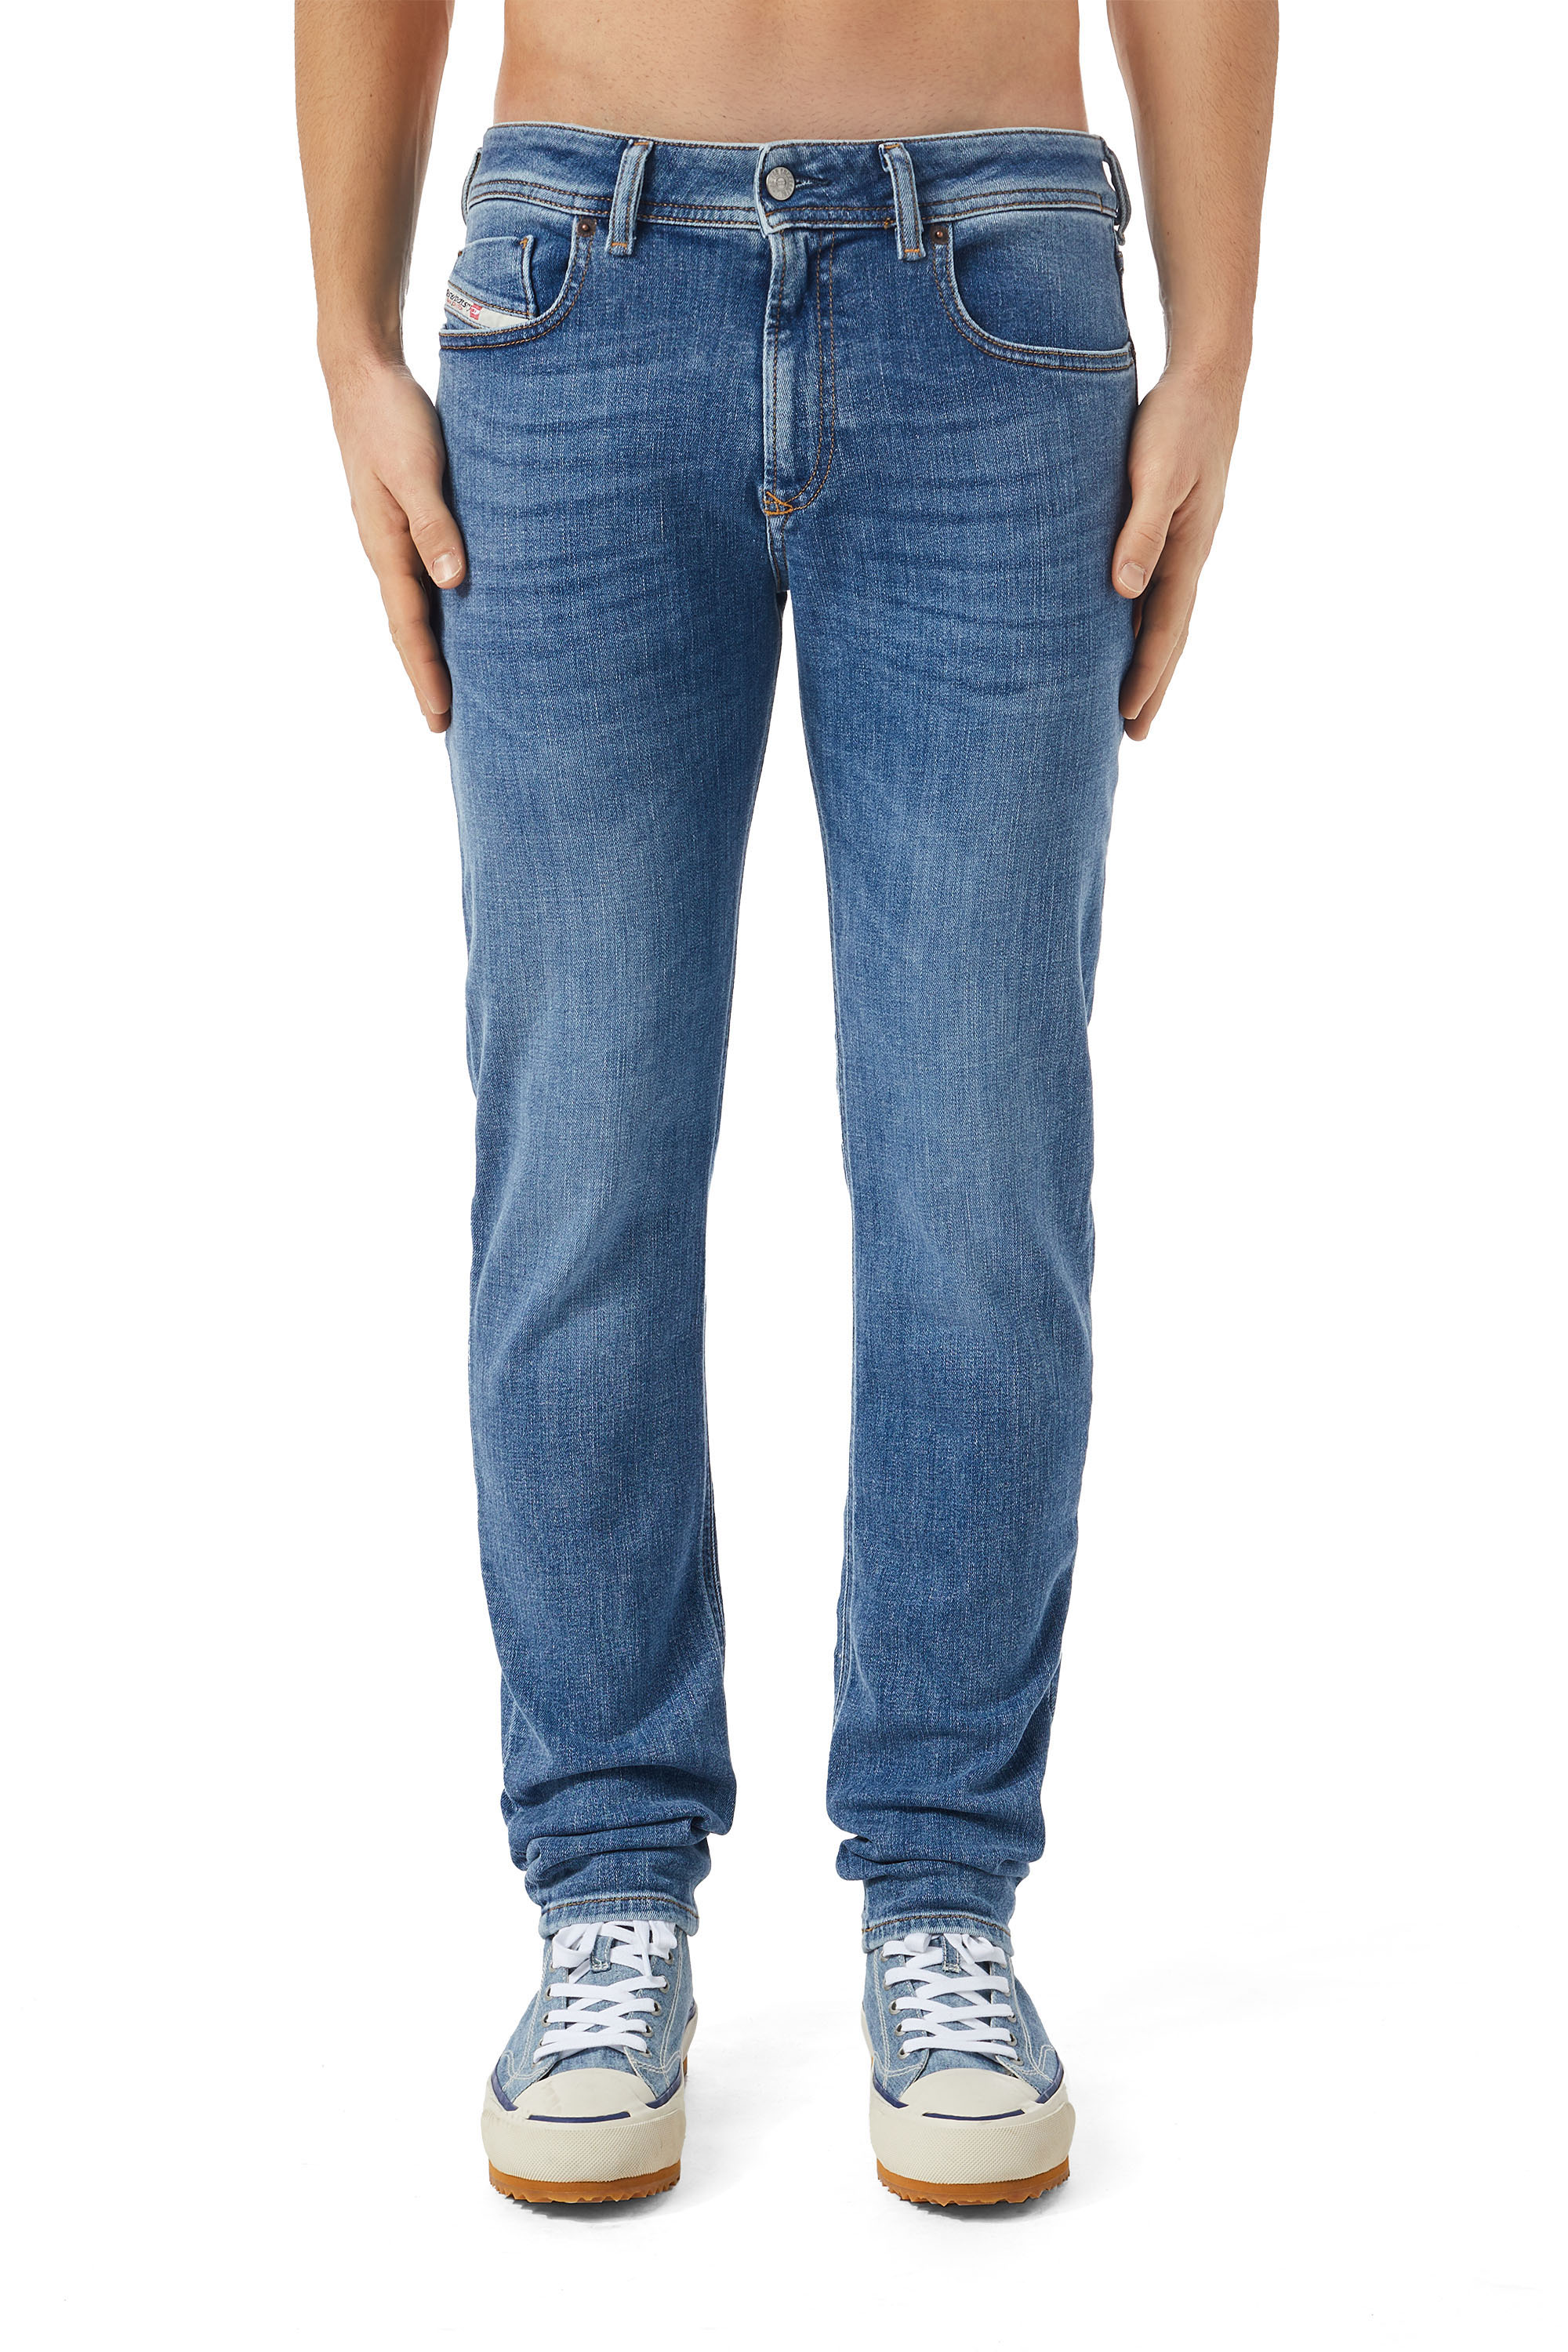 Skinny Jeans 1979 Sleenker 09C01, Azul medio - Vaqueros